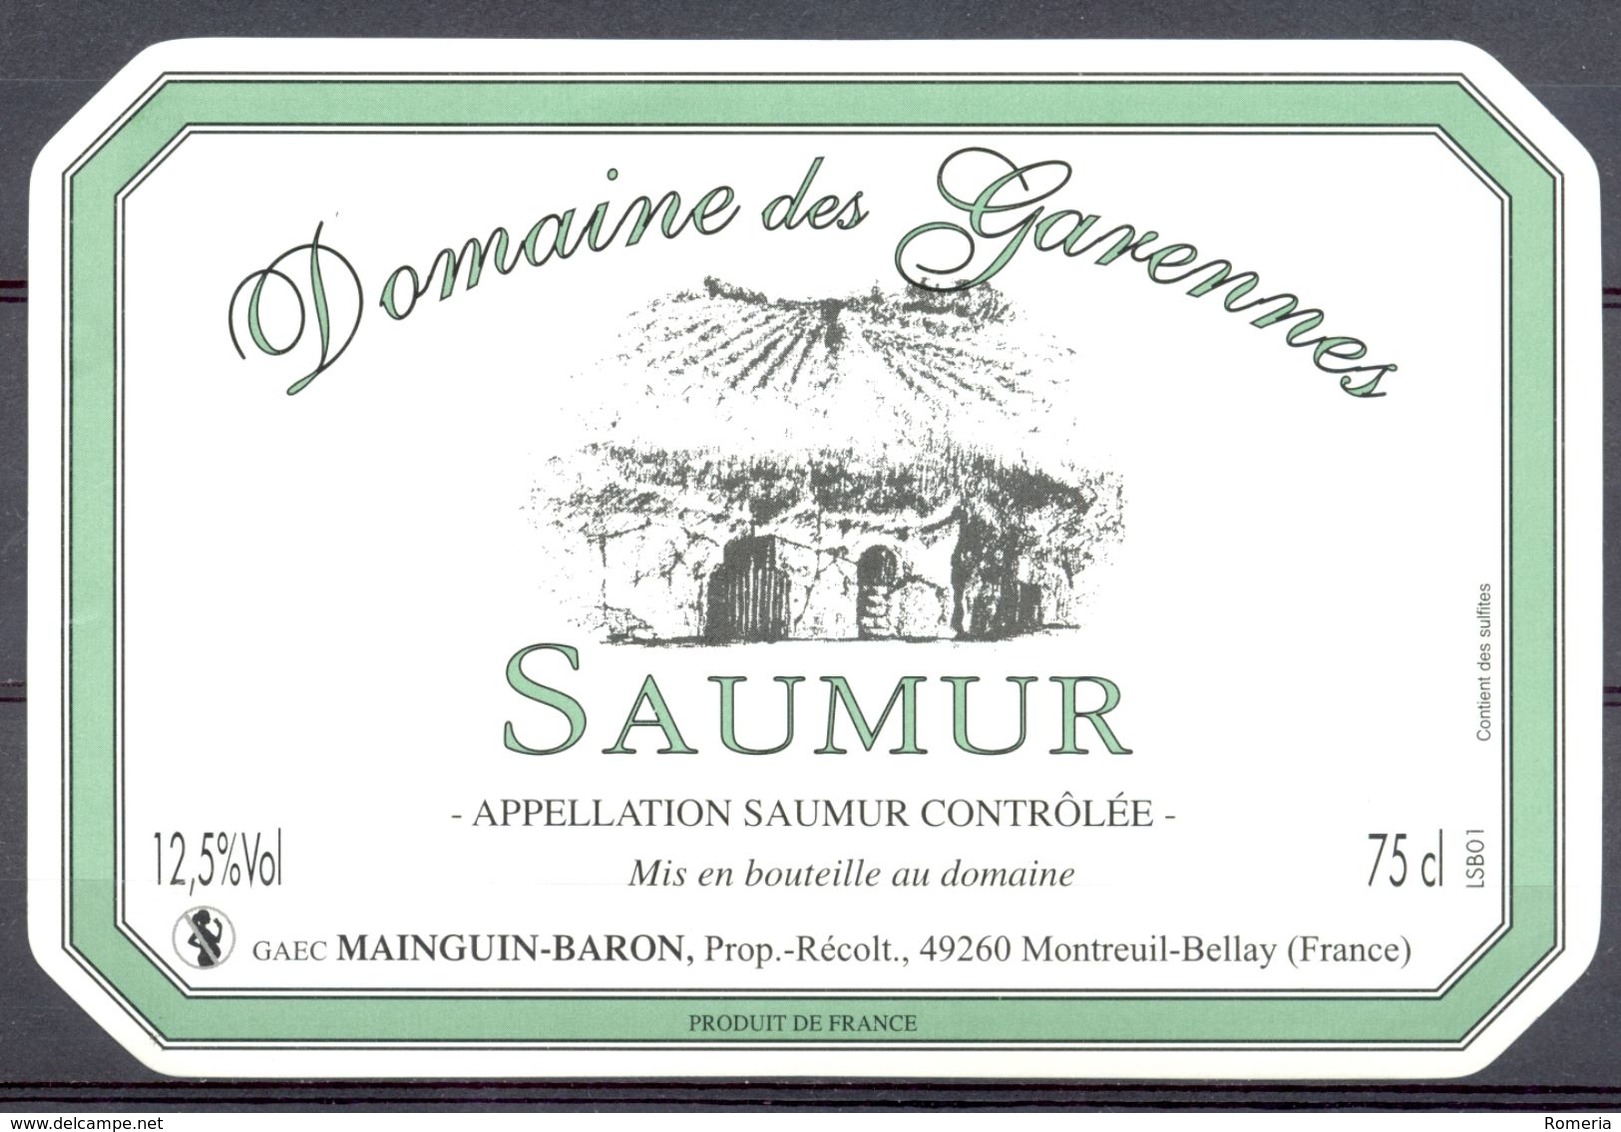 713 - Saumur - Domaine Des Garennes - GAEC Mainguin-Baron - Prop. Récoltant - 49260 Montreuil Bellay - Rotwein